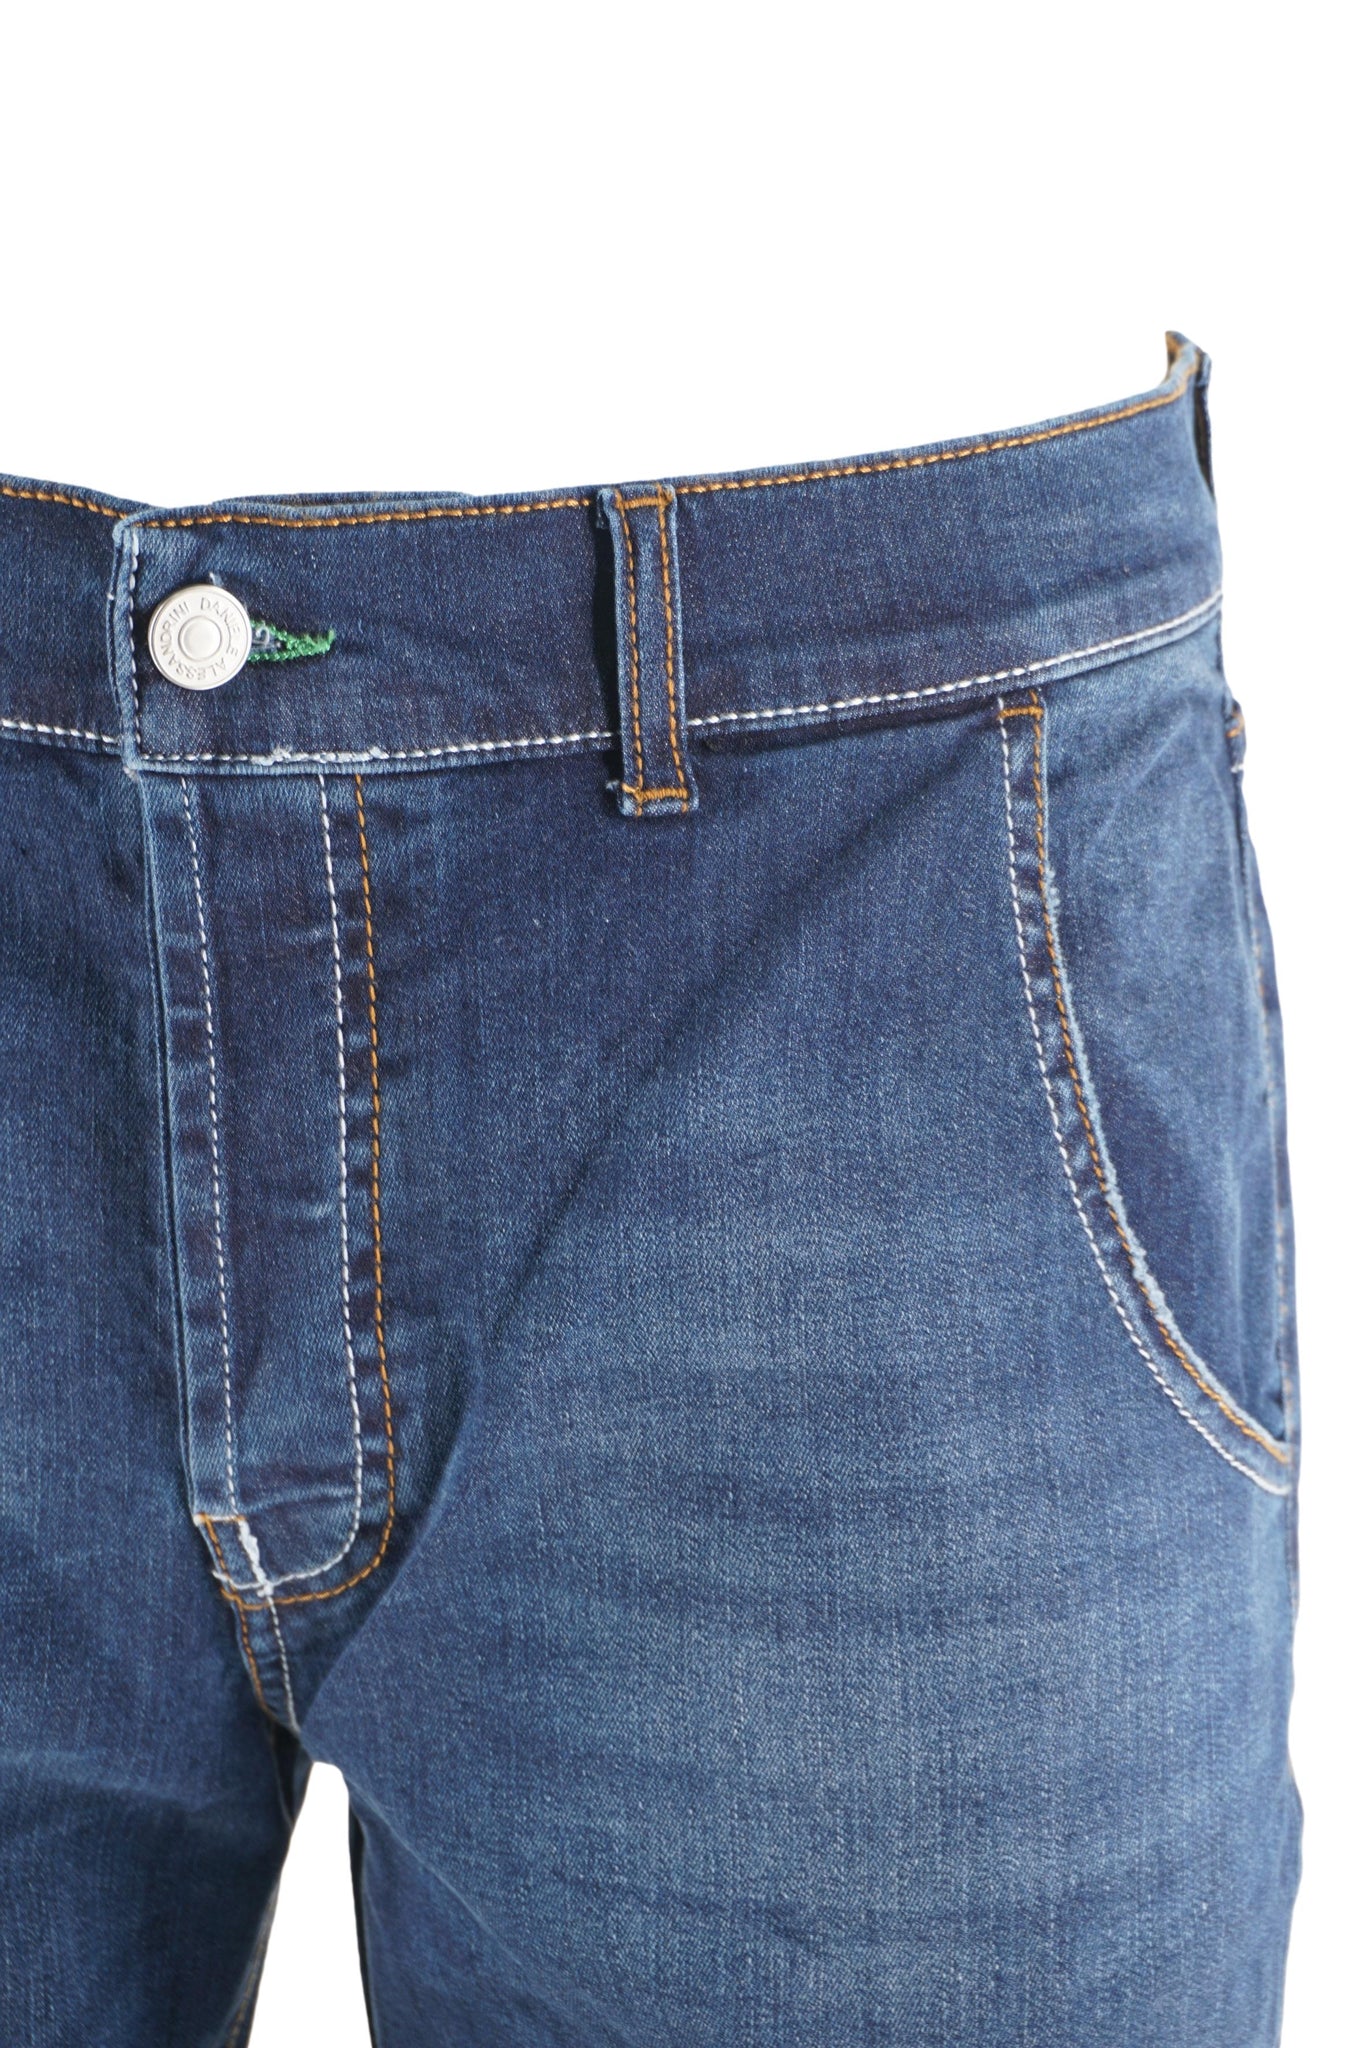 Pantaloncino in Denim / Jeans - Ideal Moda